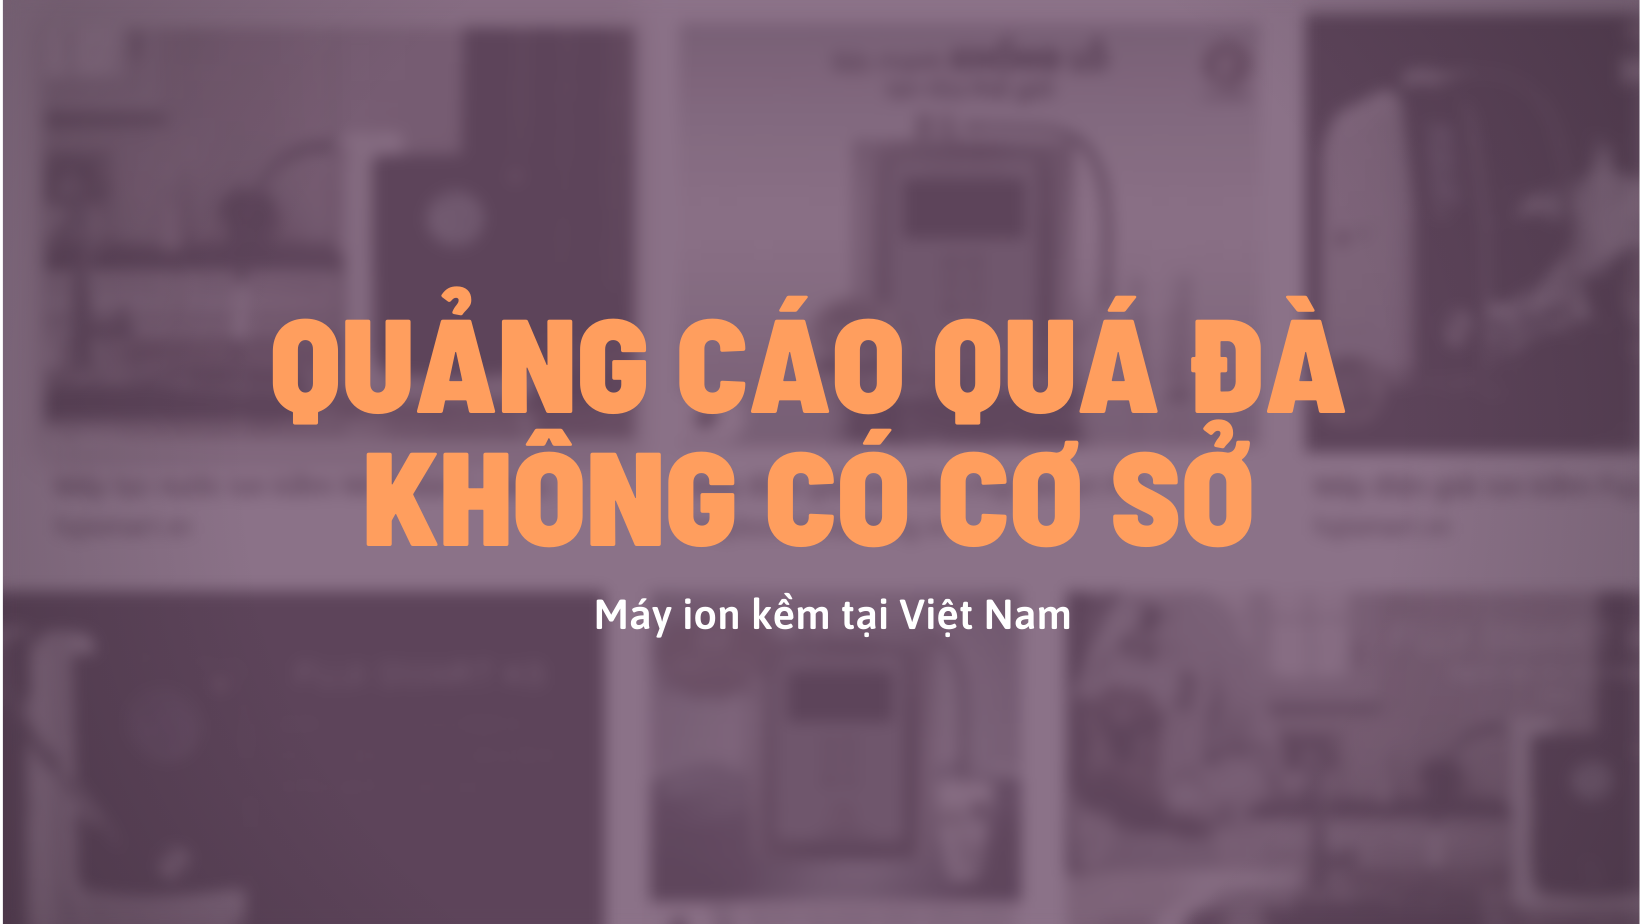 Quảng cáo quá đà không có cơ sở về máy lọc nước ion kiềm là vấn nạn tại Việt Nam